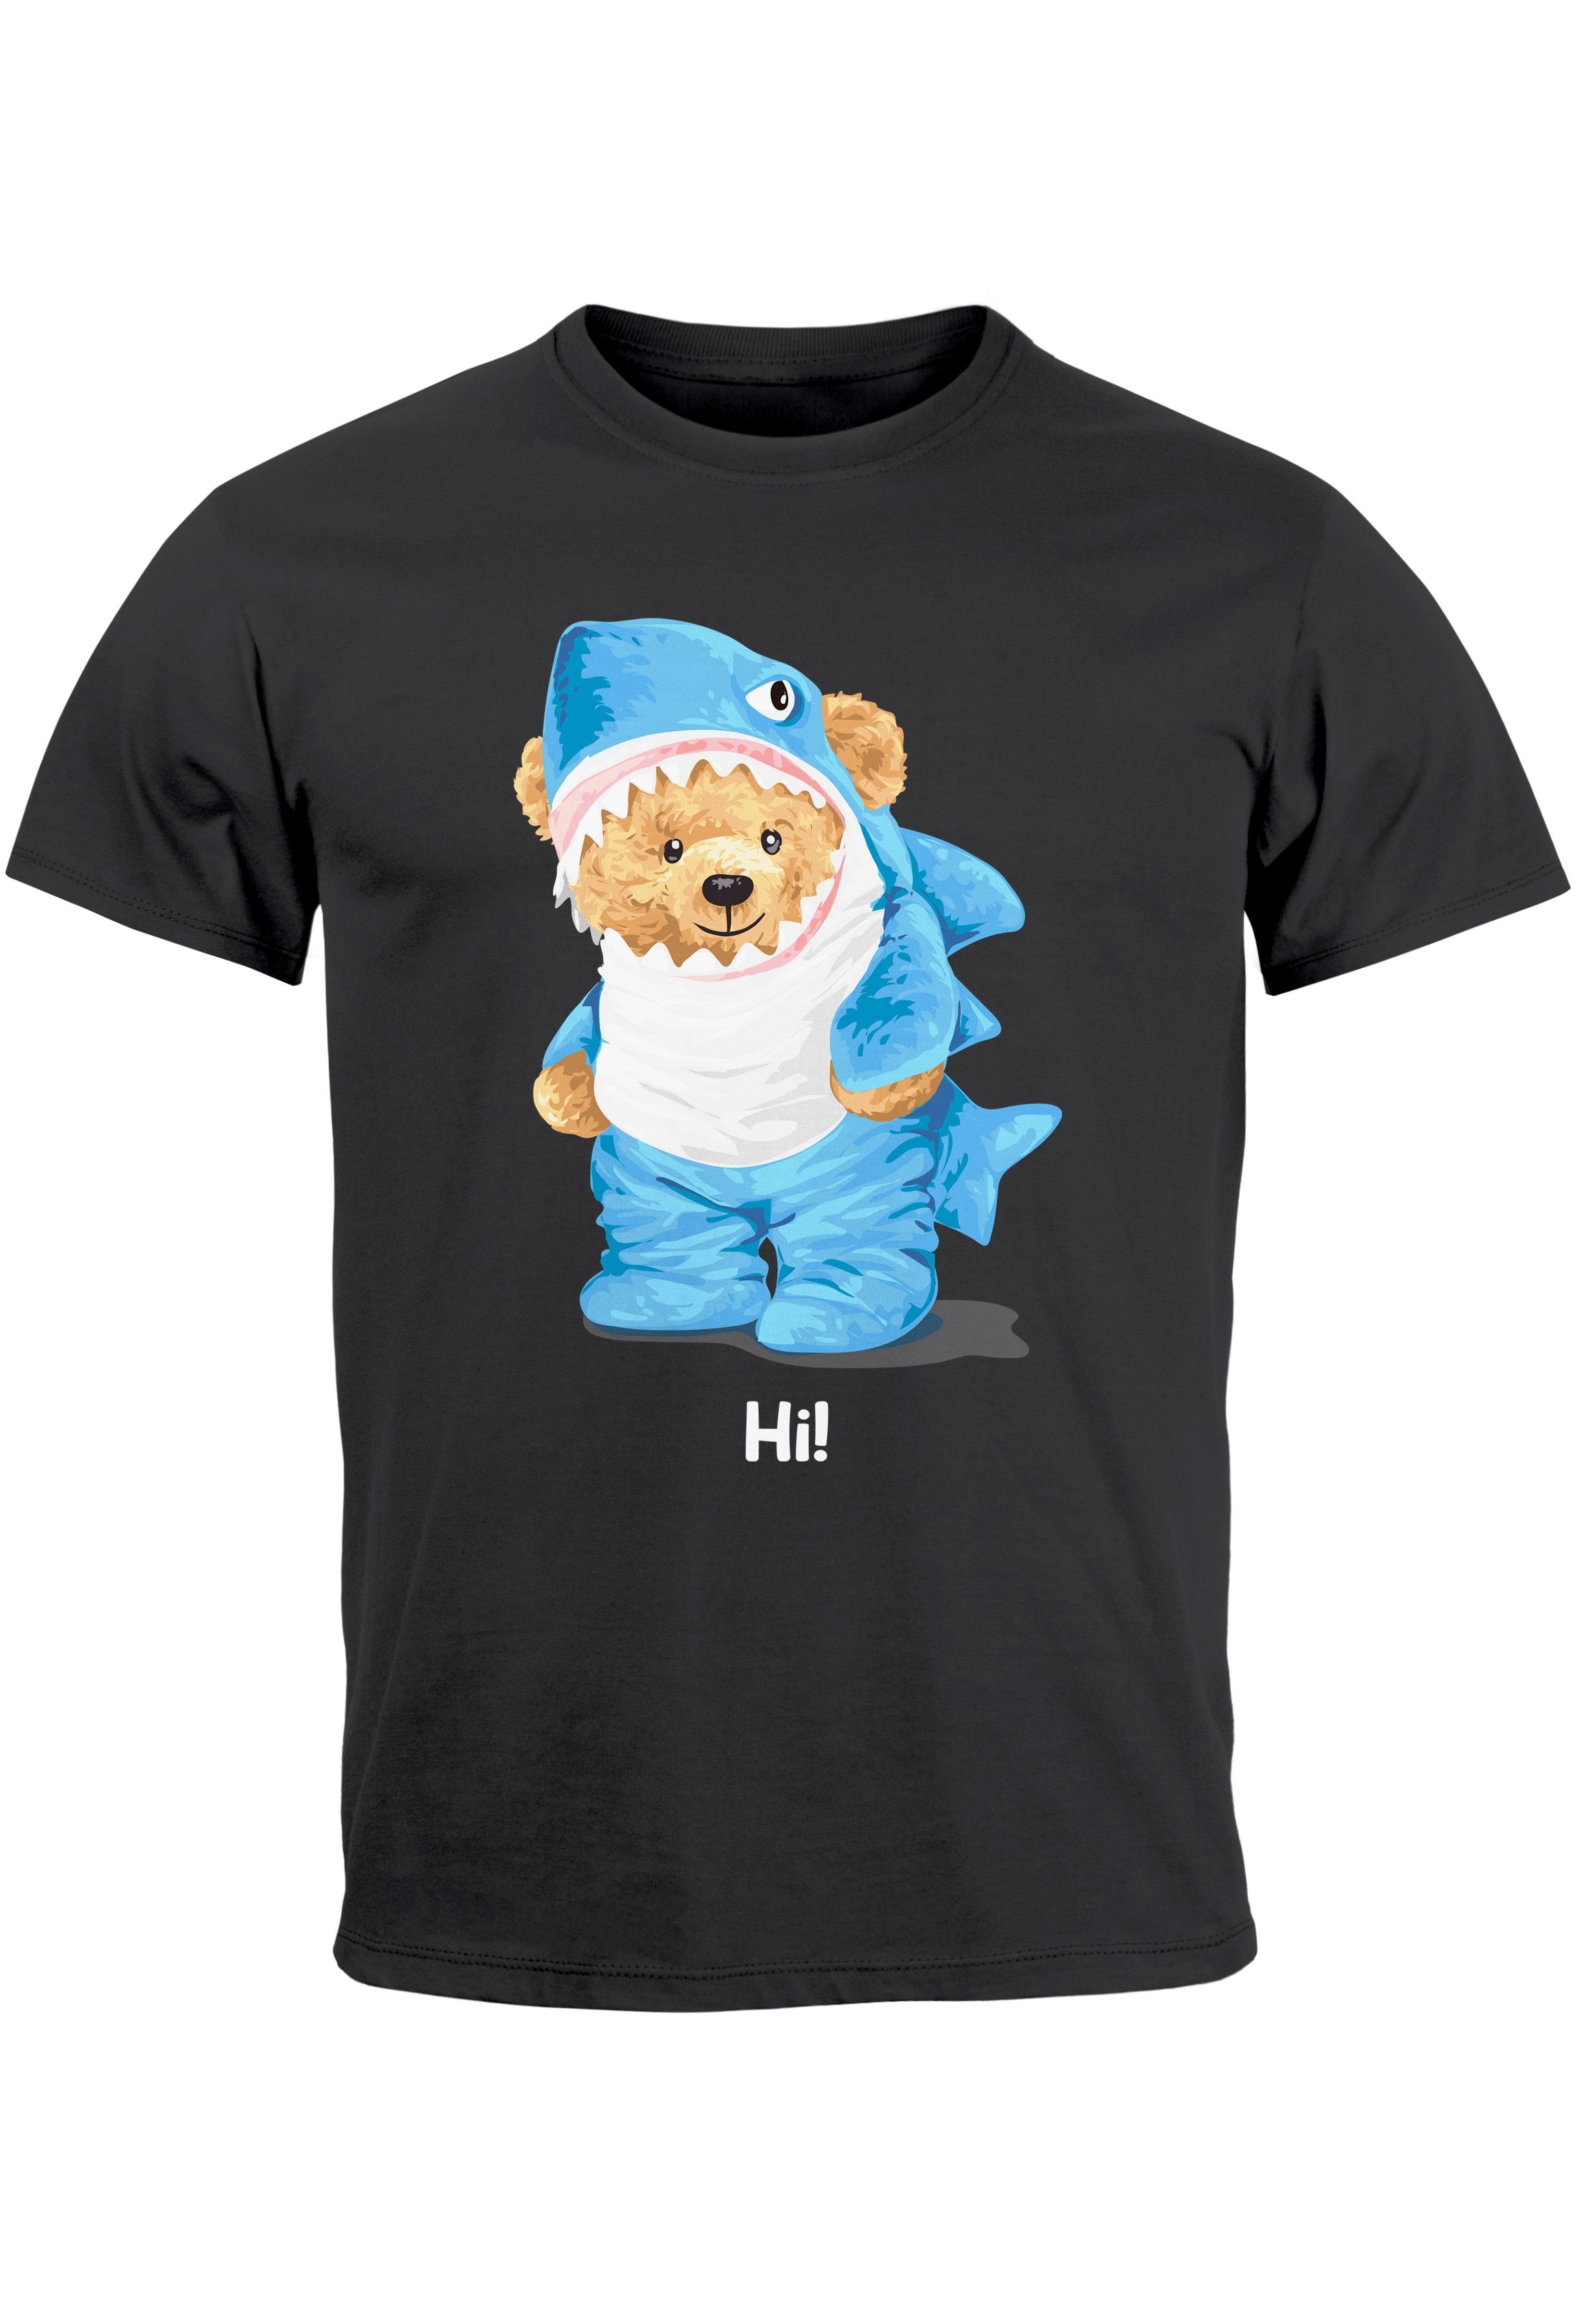 Neverless Print-Shirt Herren T-Shirt Hai Hi Teddy Bär Witz Parodie Printshirt Aufdruck Fashi mit Print dunkelgrau